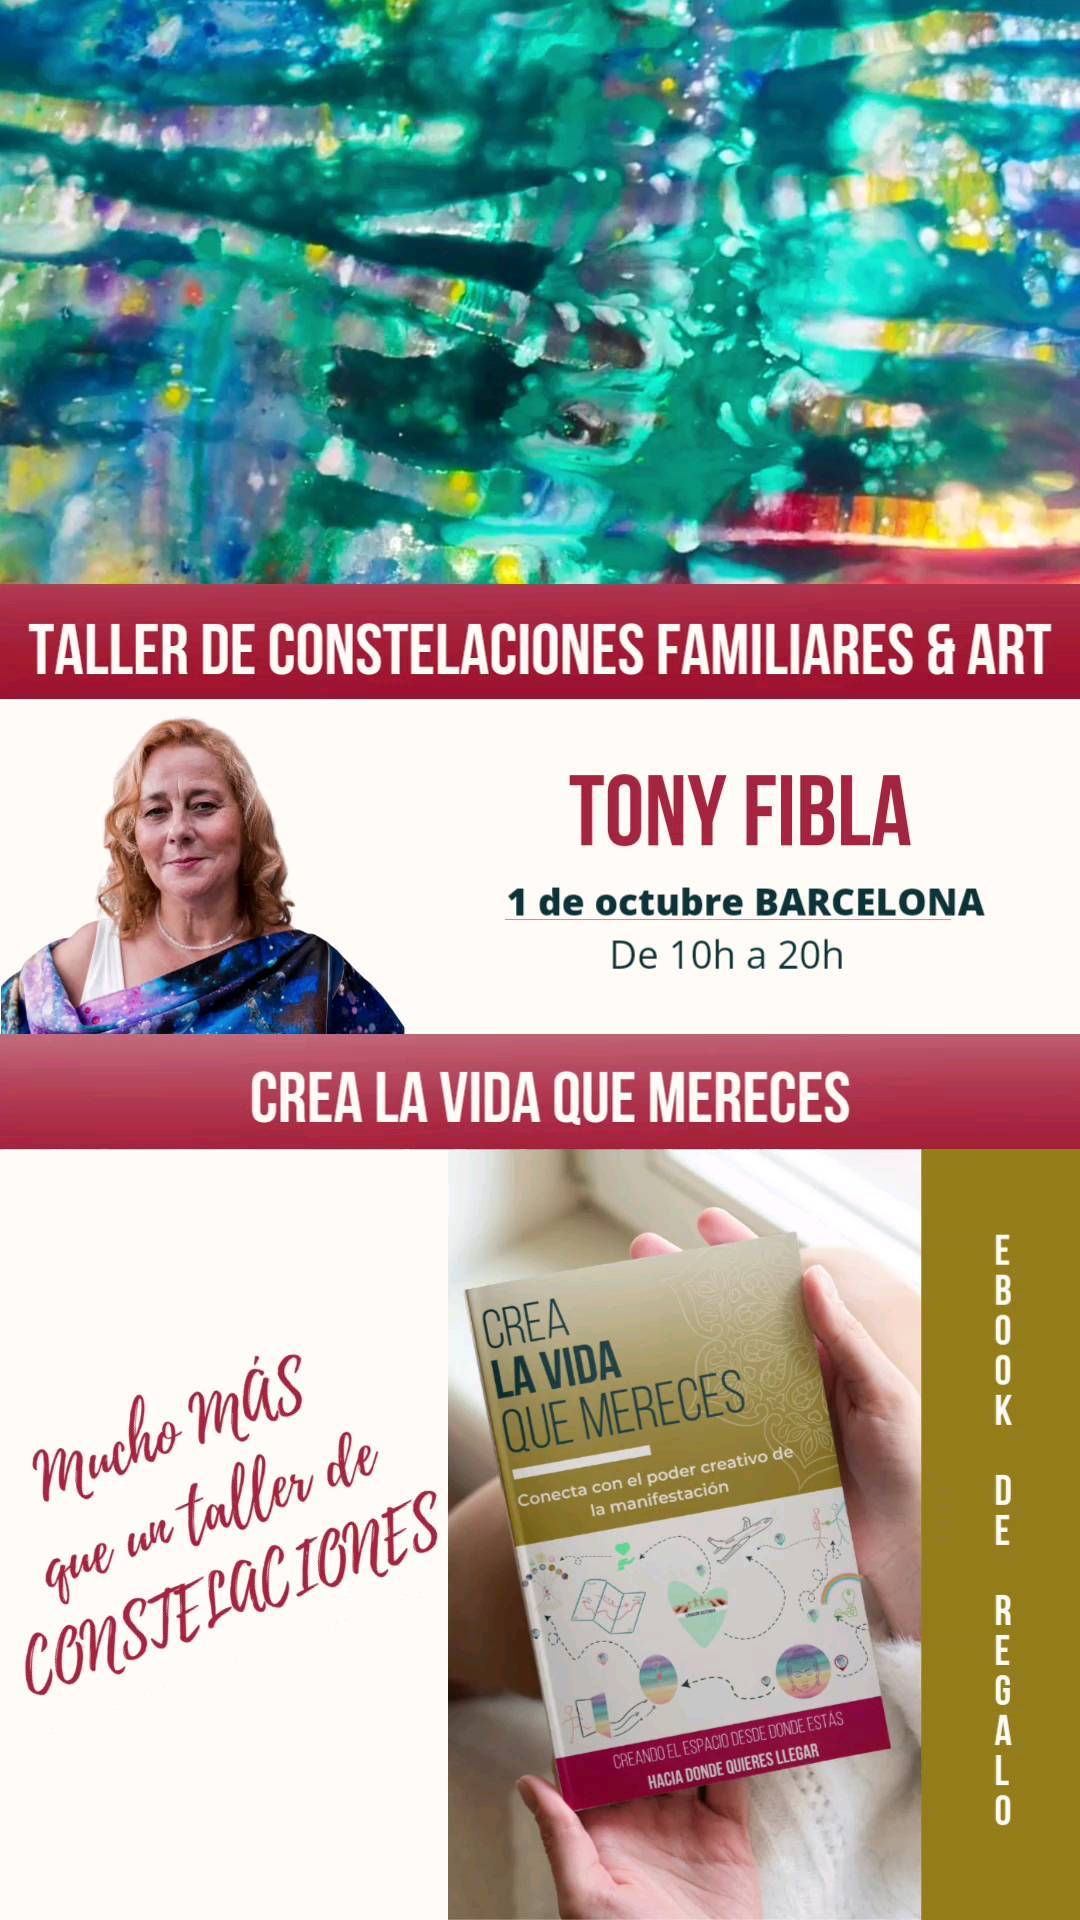 Constelaciones familiares & Art

1 de octubre Barcelona